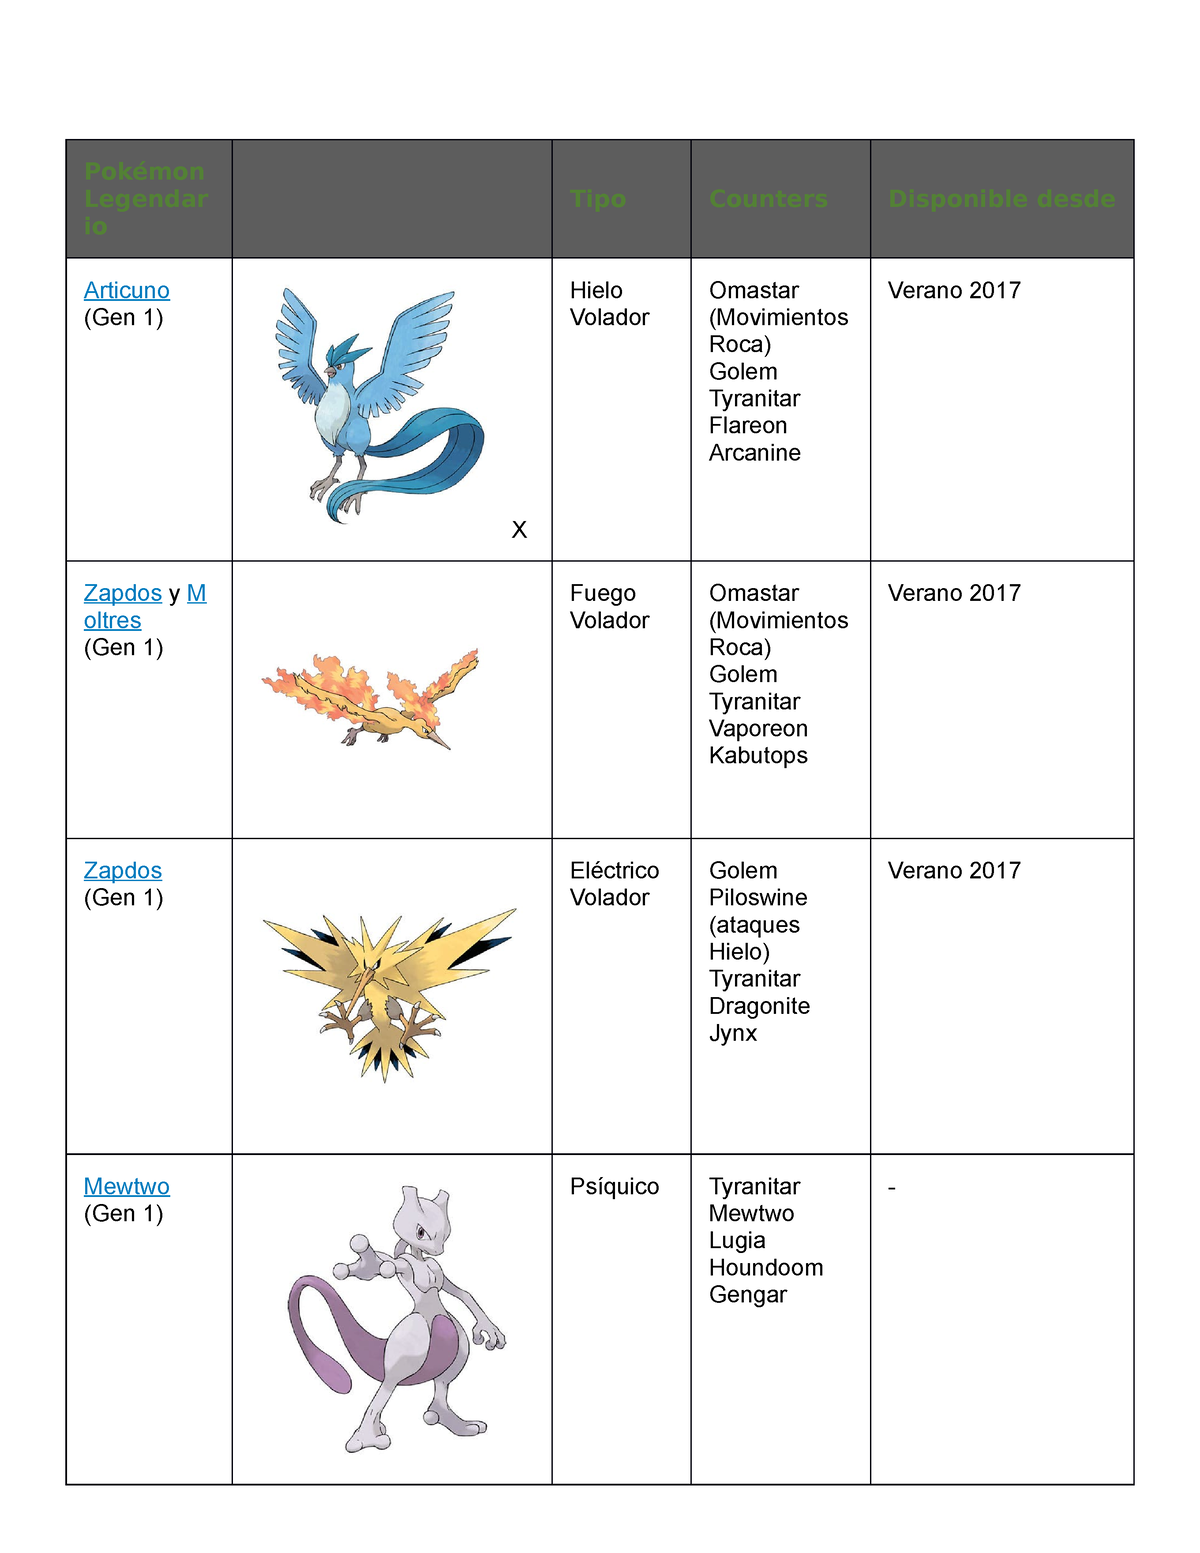 Incursión de Regigigas en Pokémon GO: Counters y movimientos